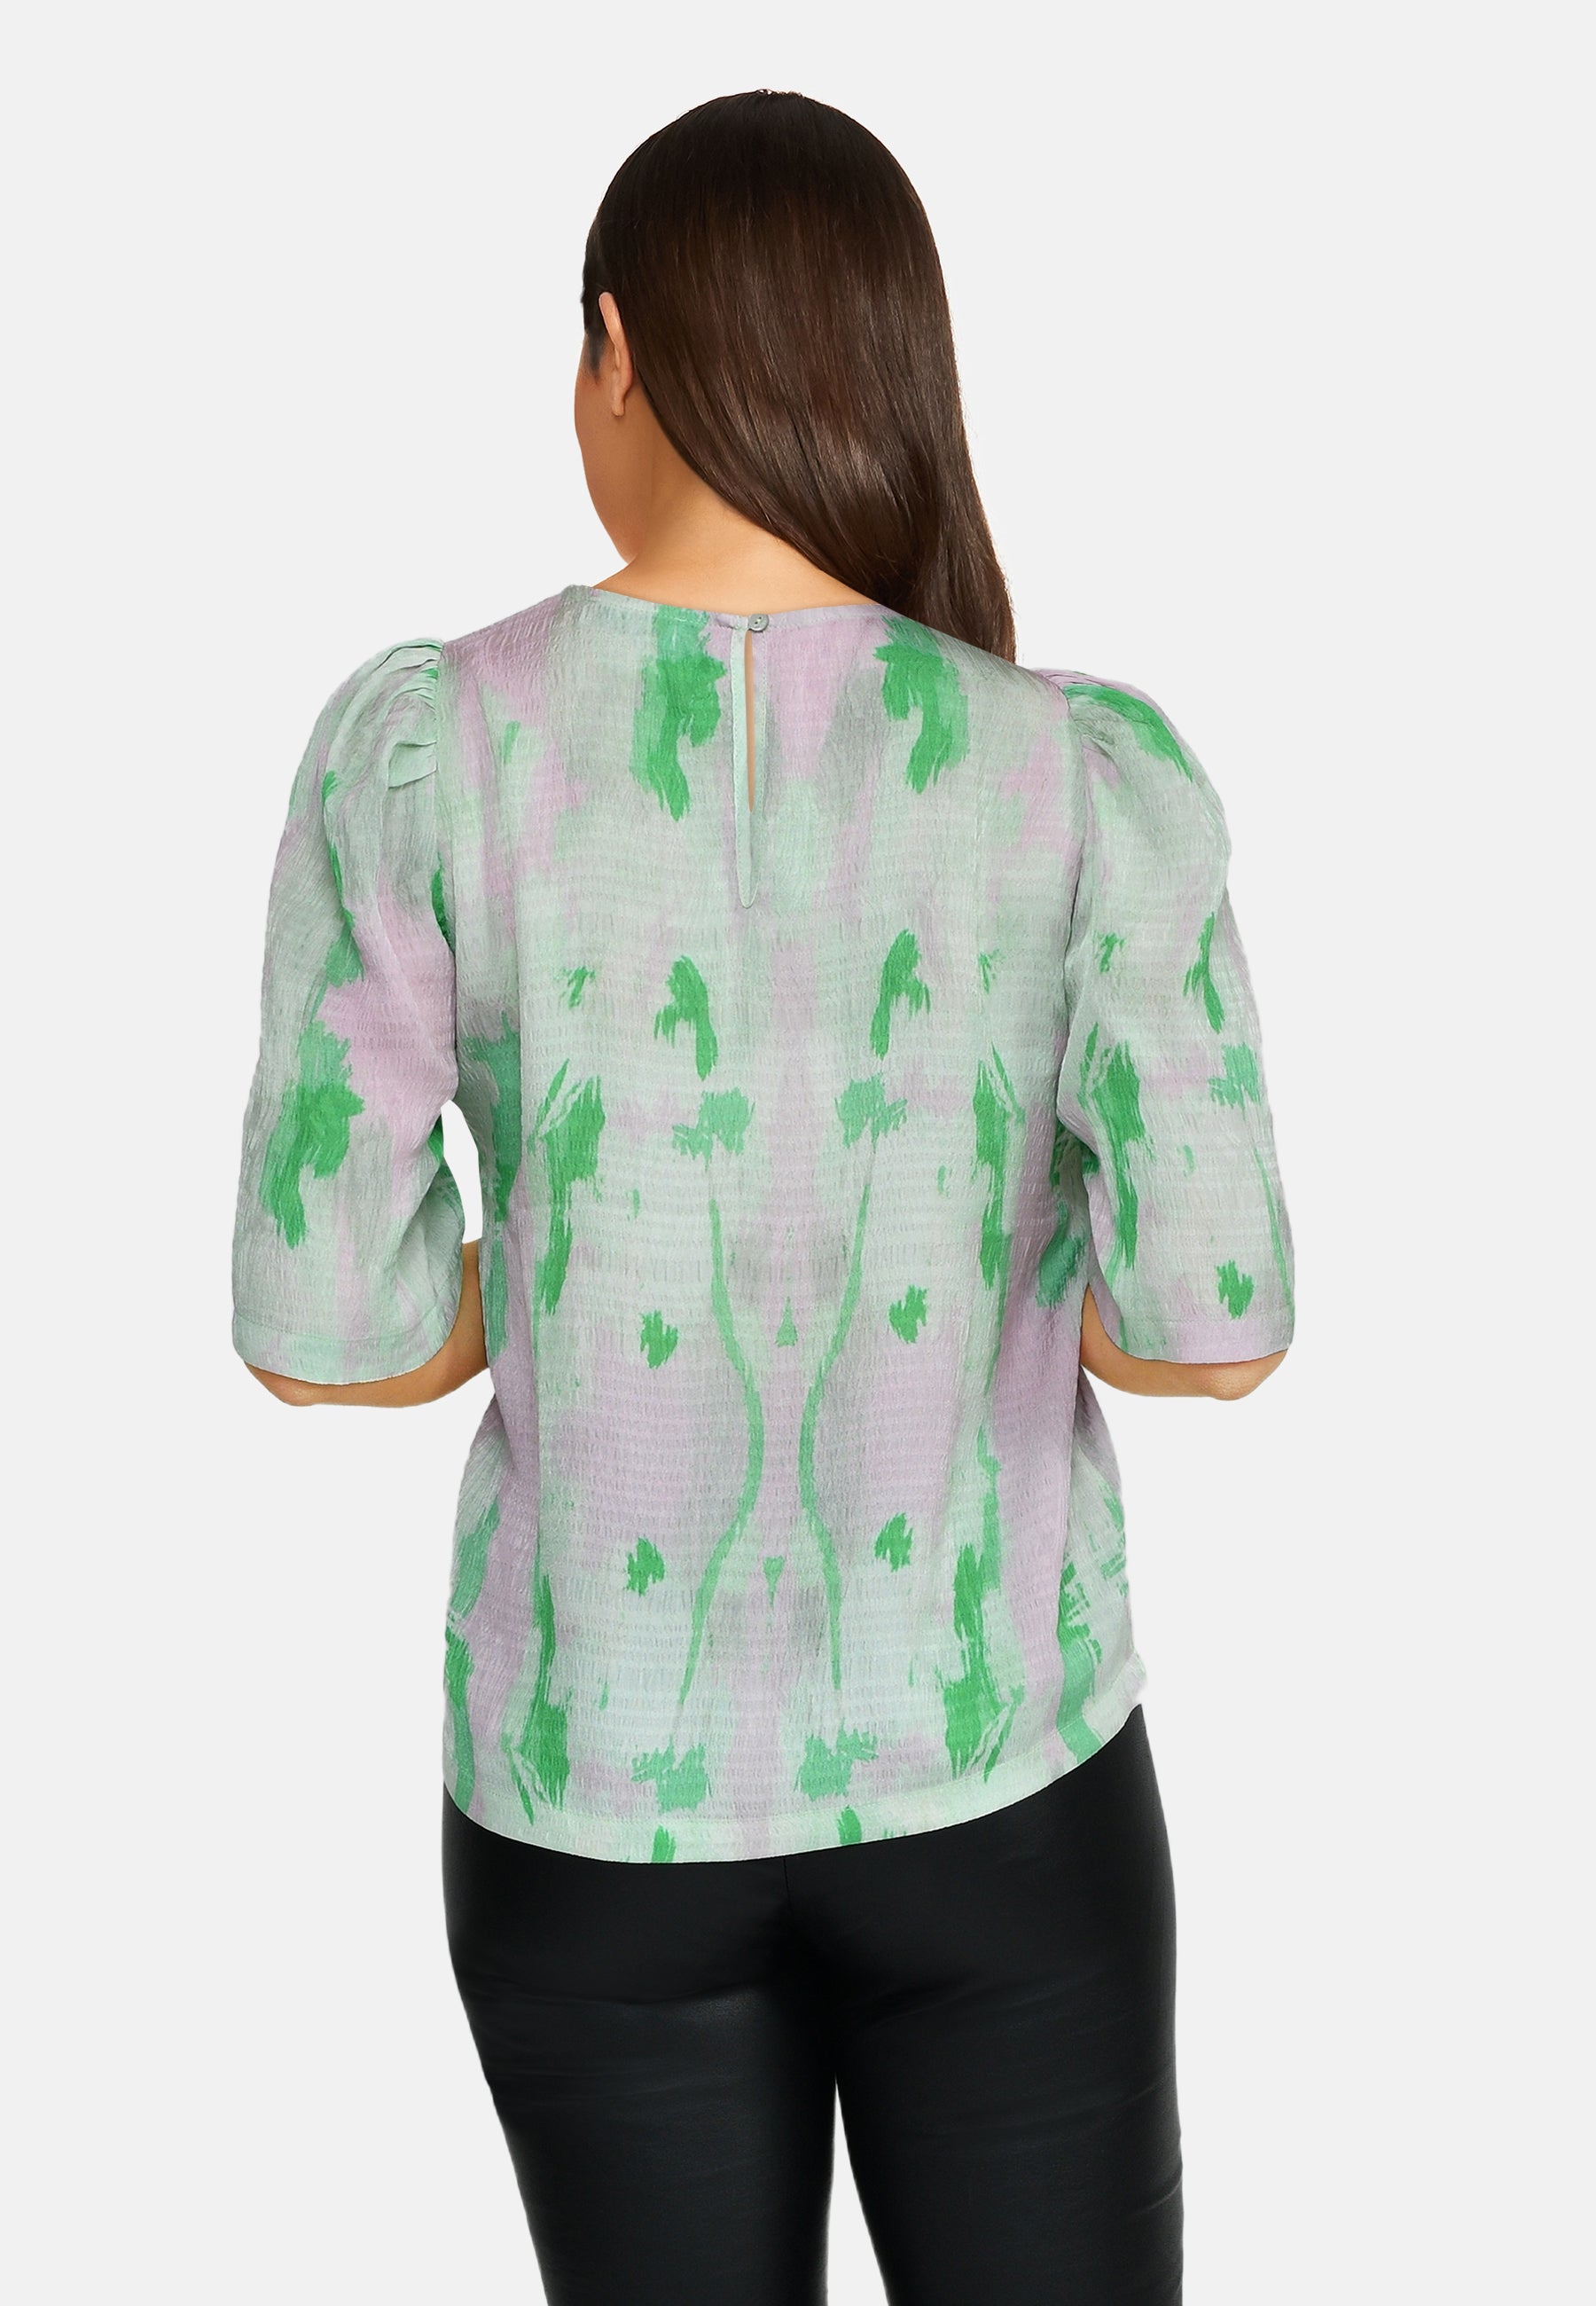 Bluse med grøn og pink print, kort ærmer, bagfra